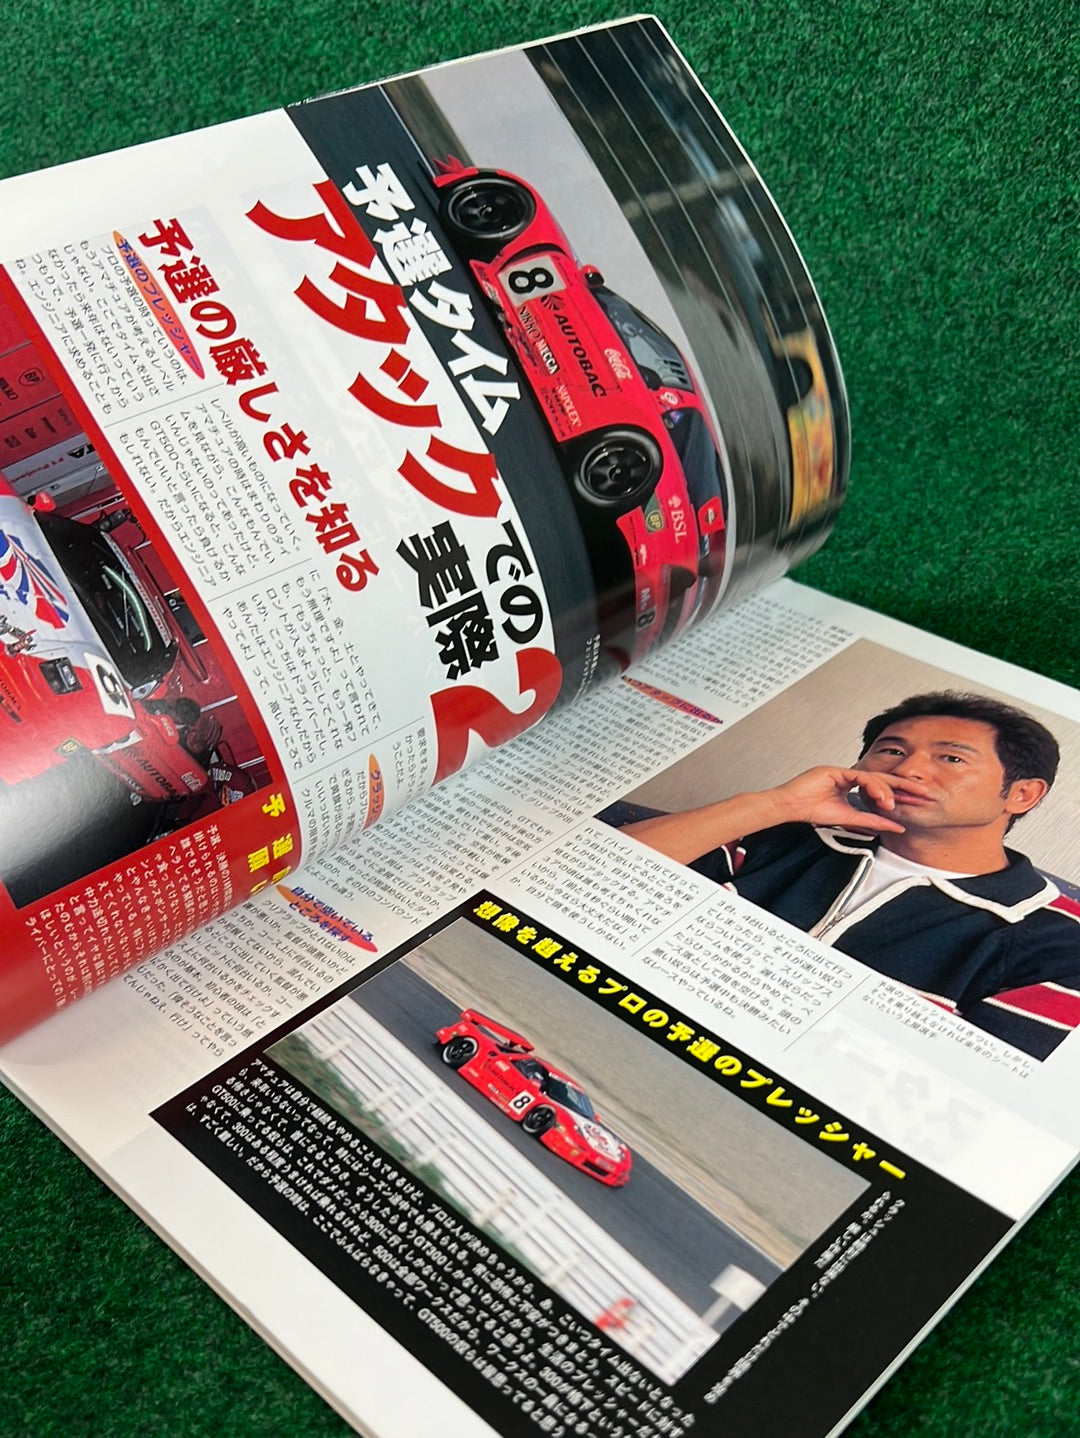 Techno Auto Magazine - 2001 Vol. 4